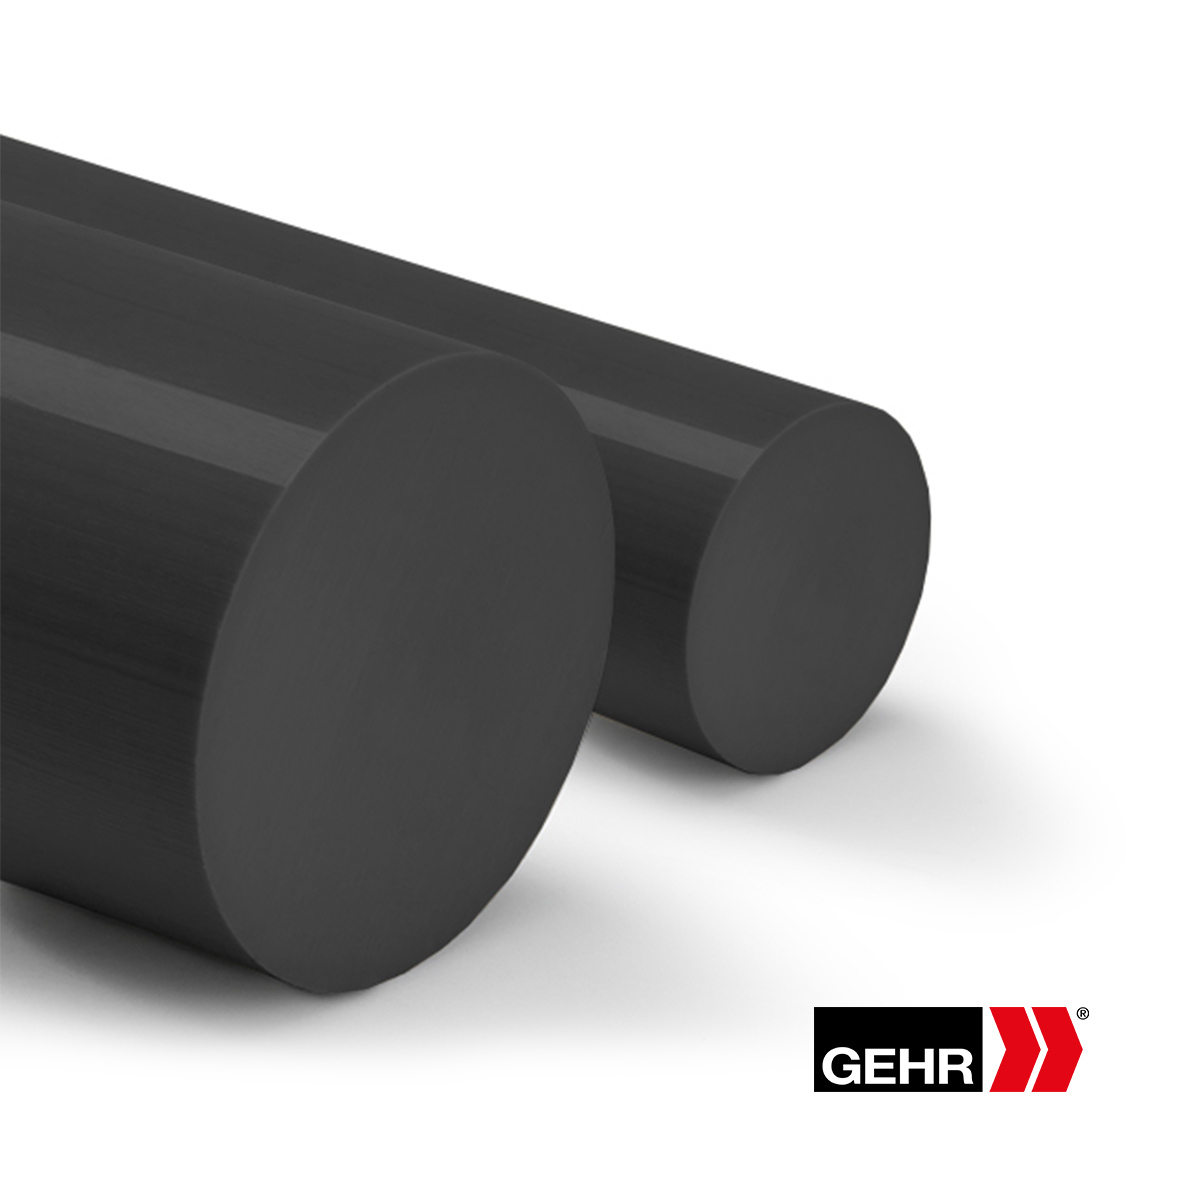 GEHR PET Round Rods 100 mm black